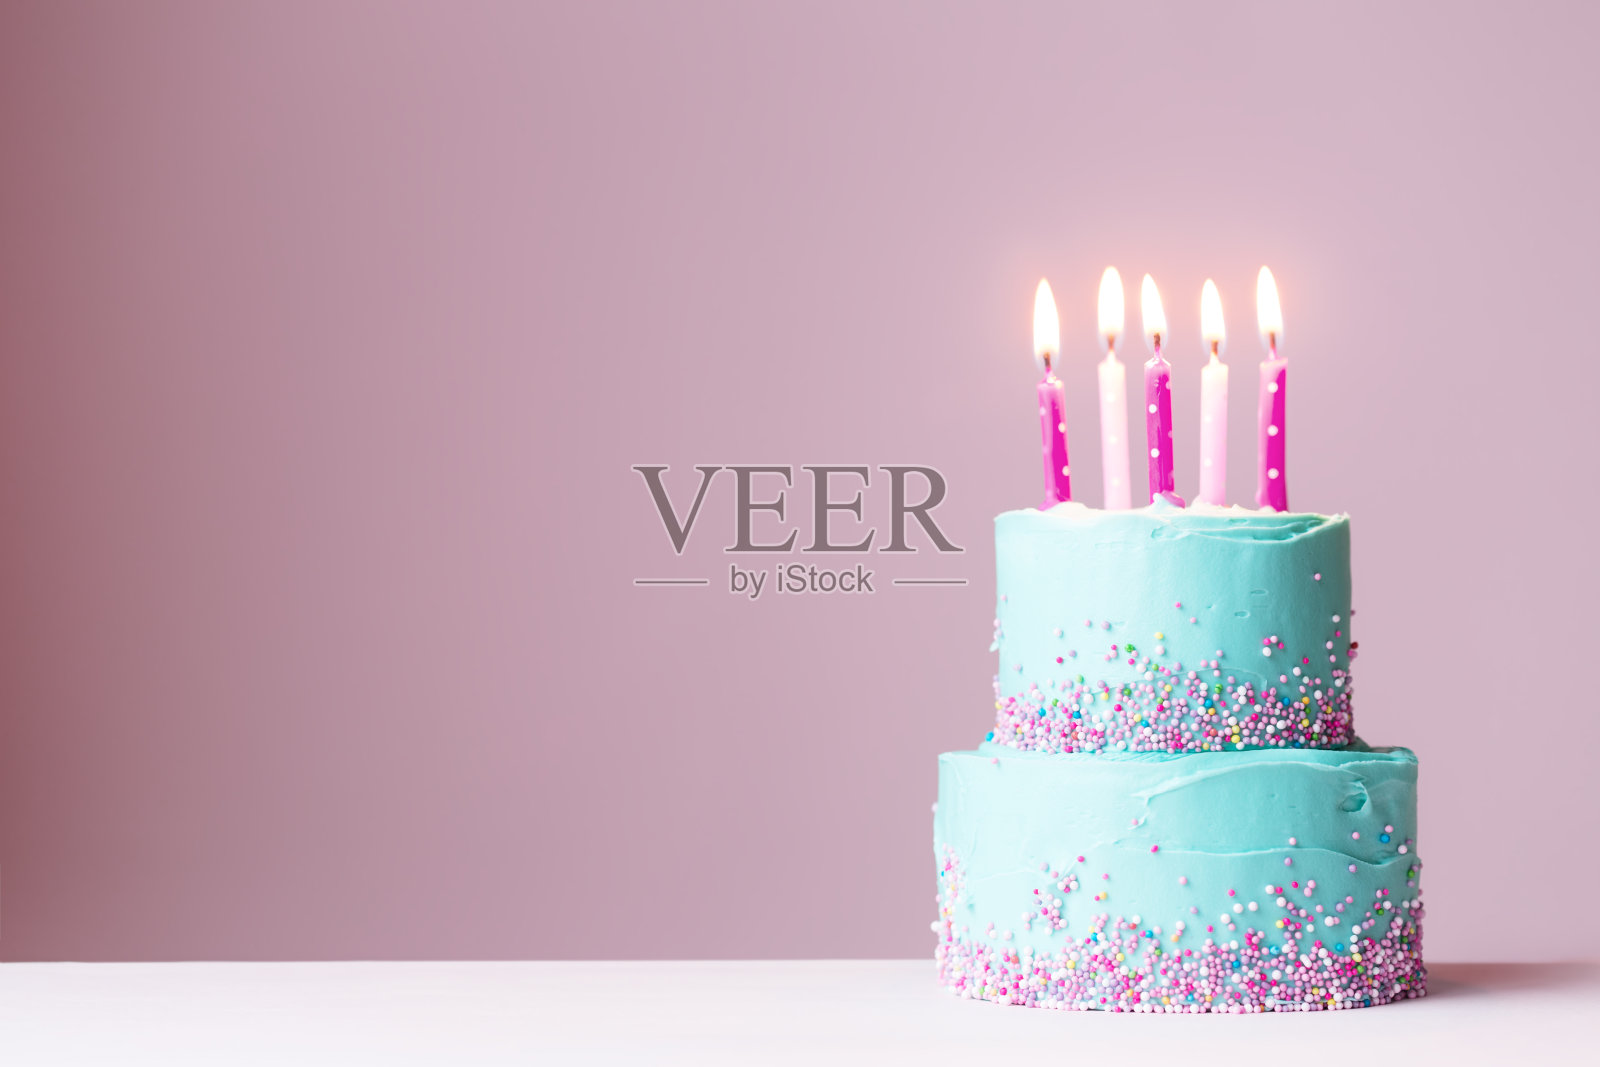 插着粉红色蜡烛的生日蛋糕照片摄影图片